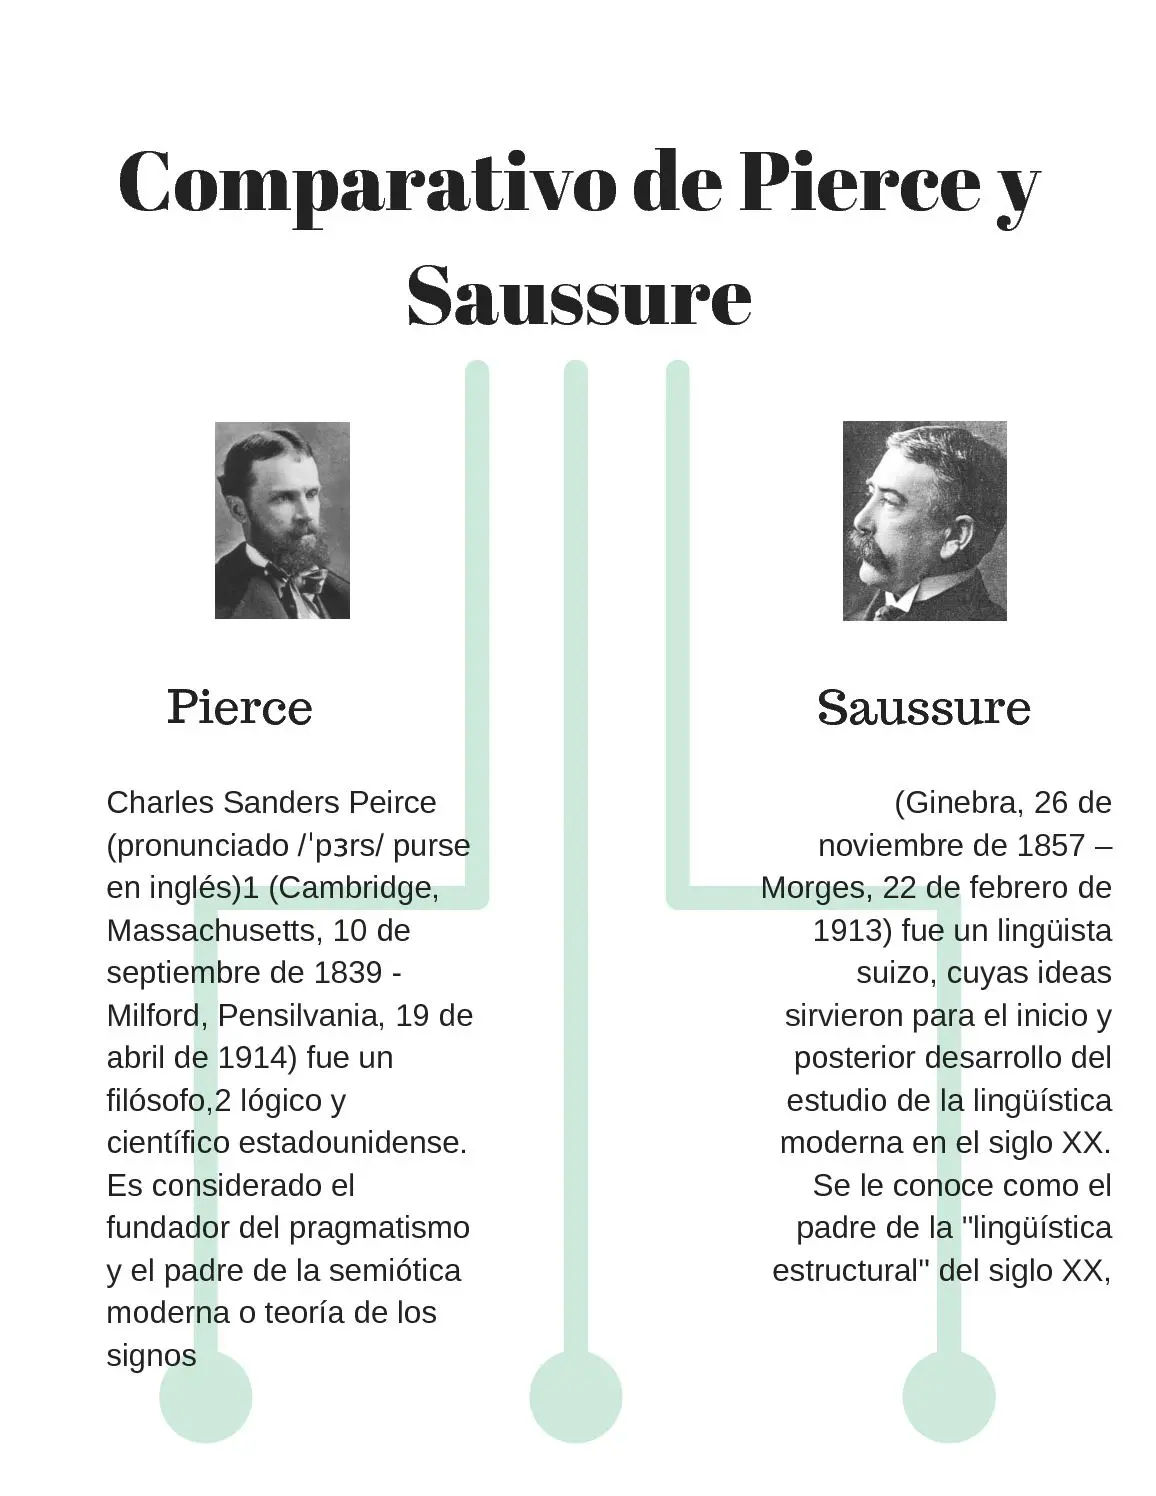 el estudio de los signos peirce y saussure resumen - Qué es el signo para Saussure y Peirce